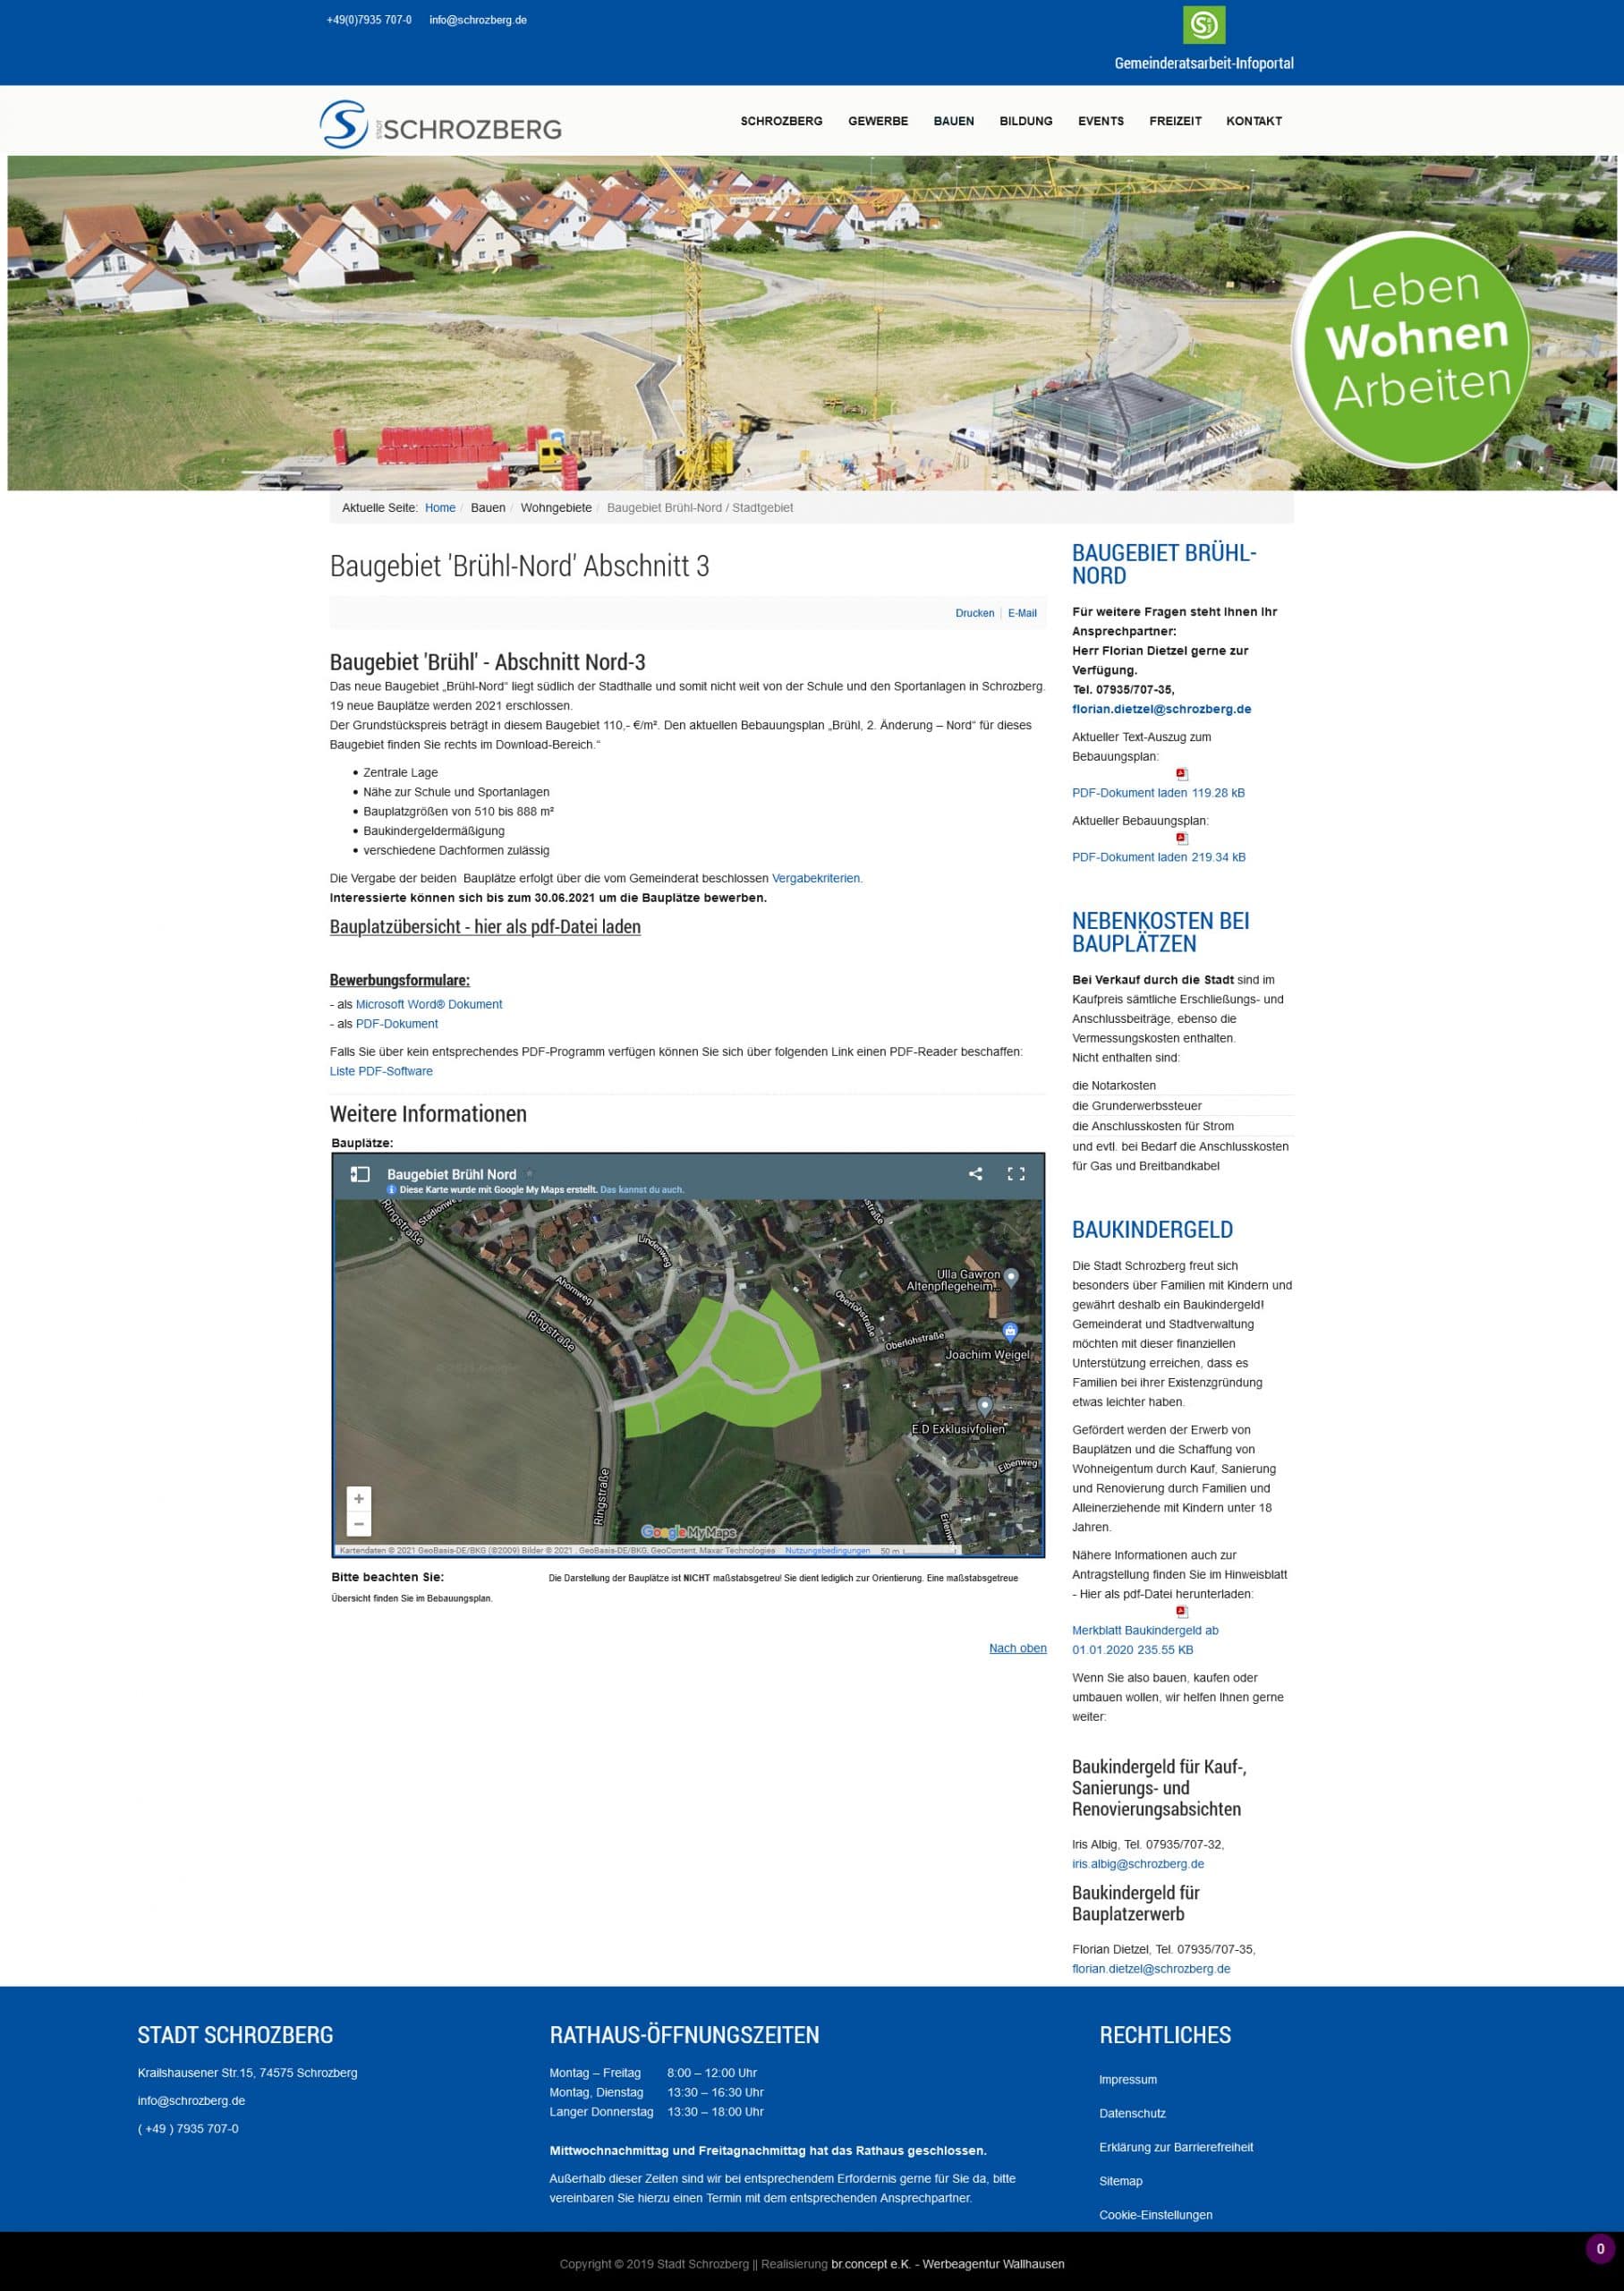 Startseite der Website der Stadt Schrozberg